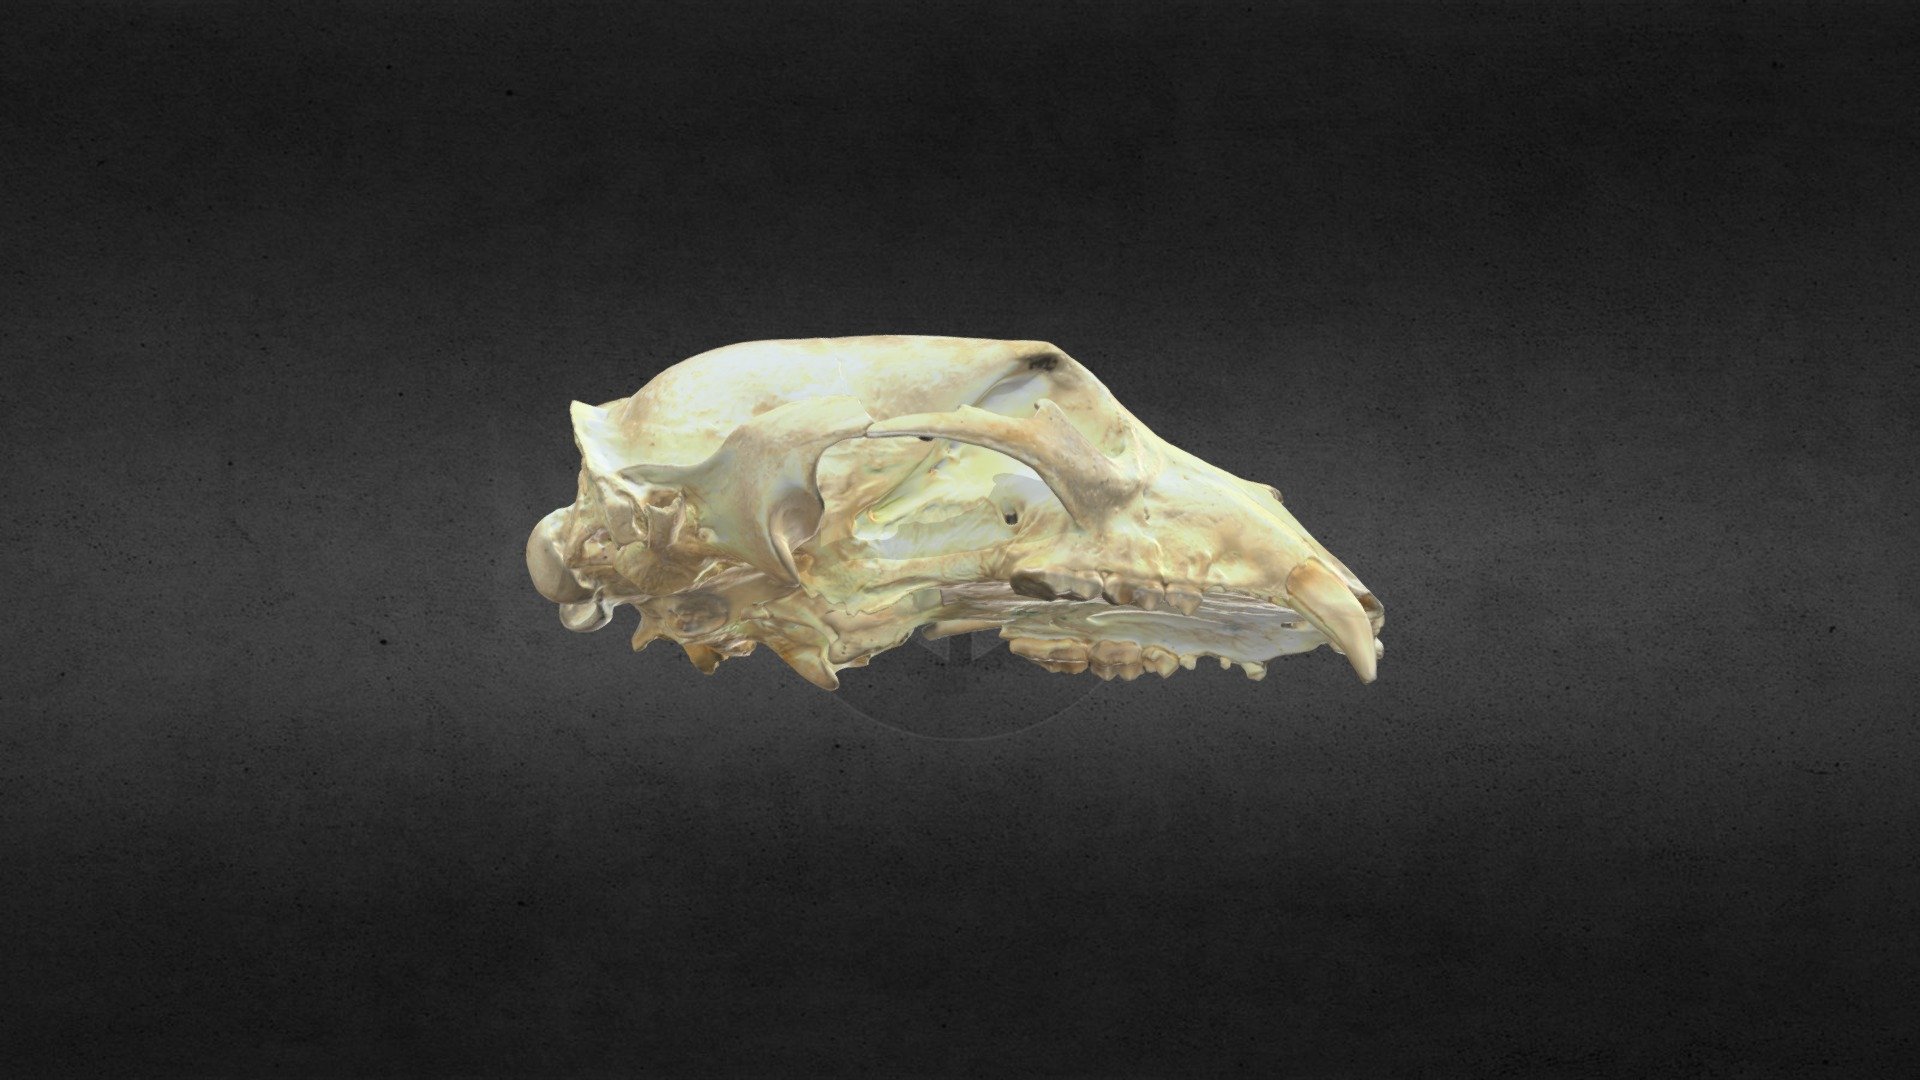 MSCC007 Ursus americanus Skull